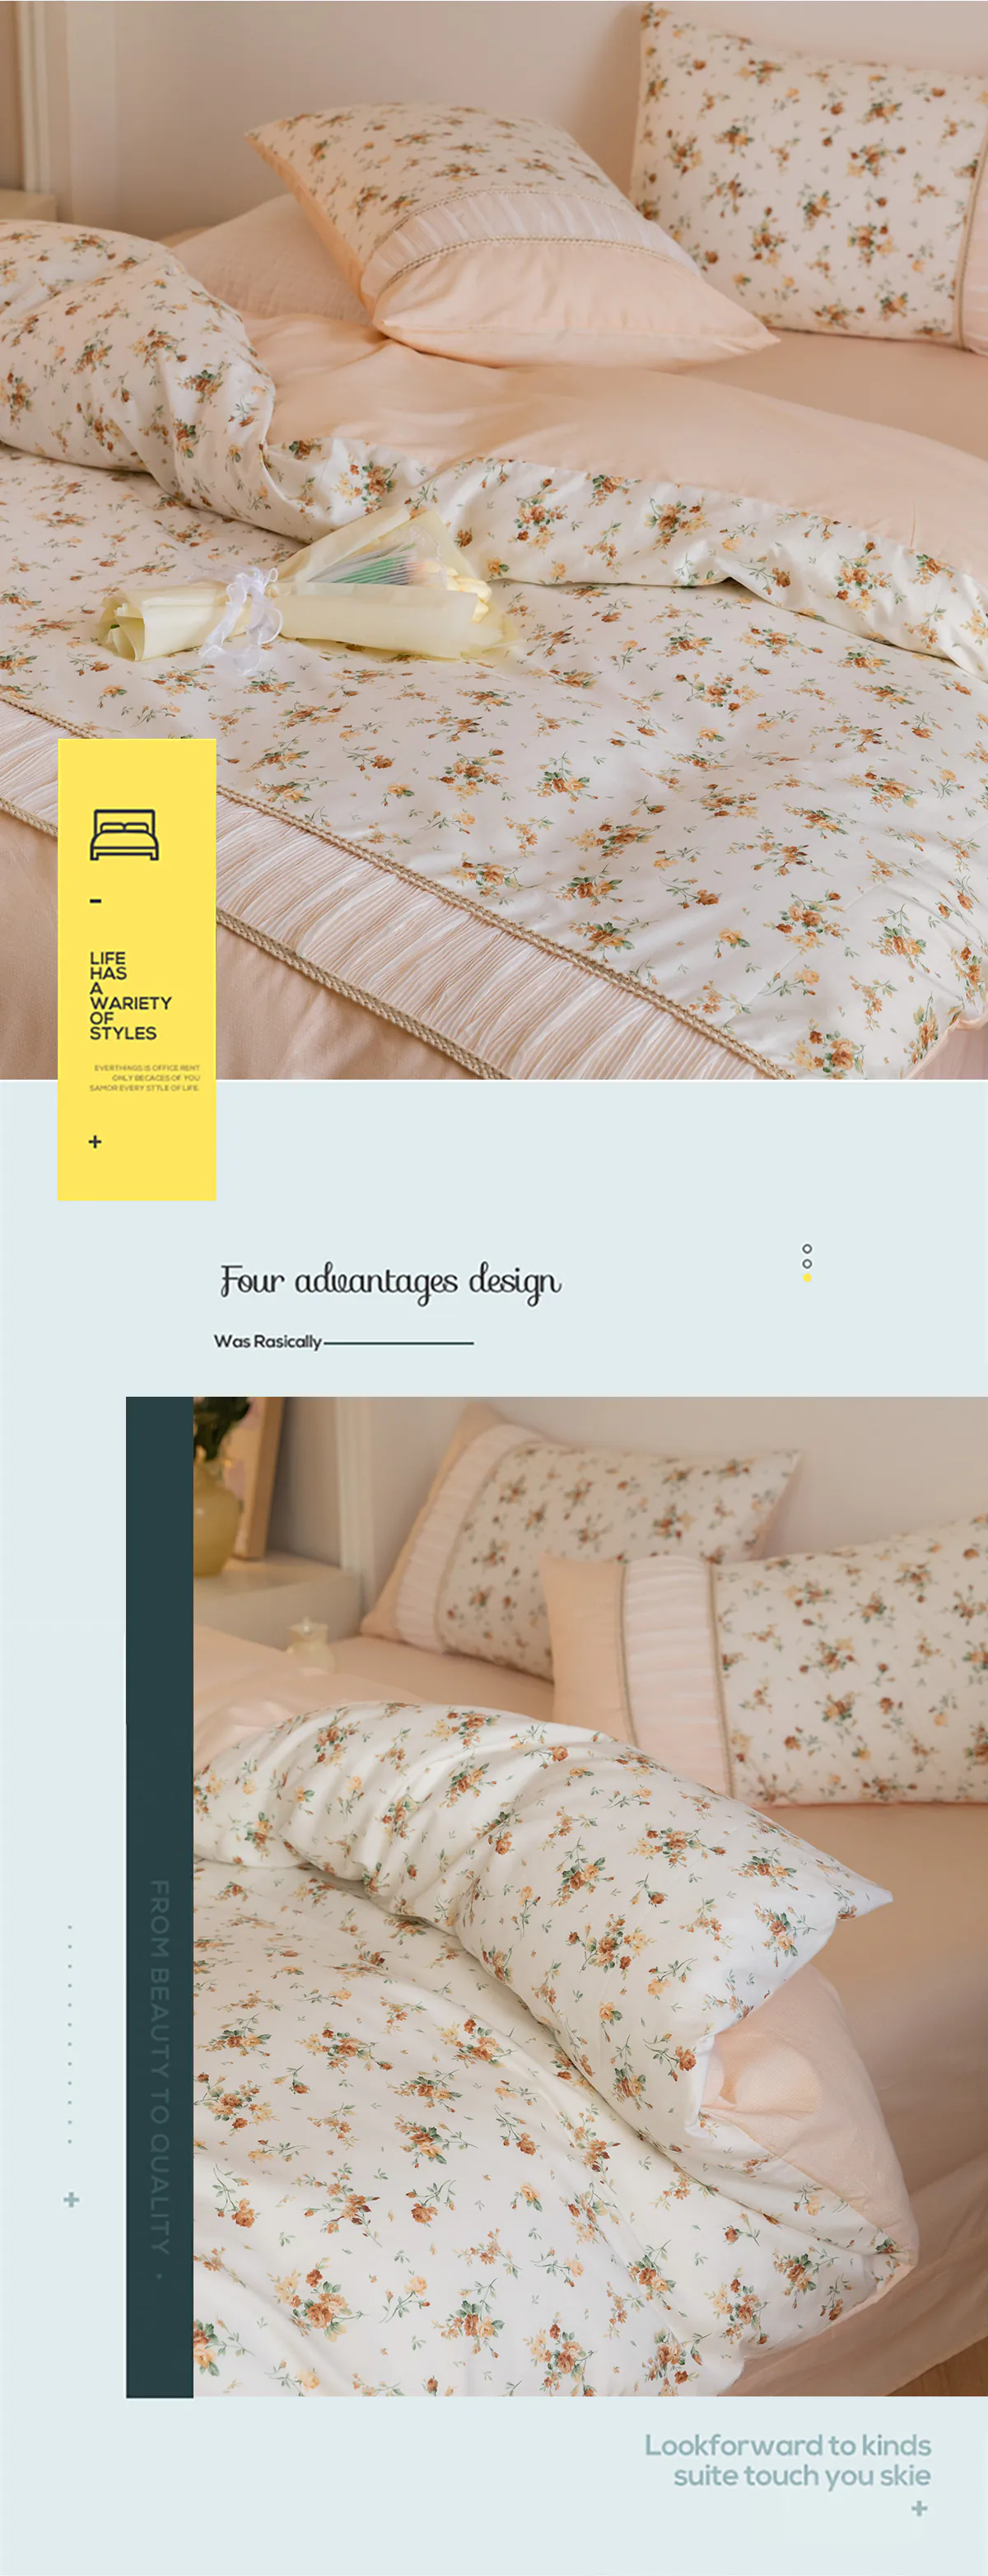 Retro-Princess-Style-100-Cotton-Floral-Duvet-Cover-Bedding-Set22